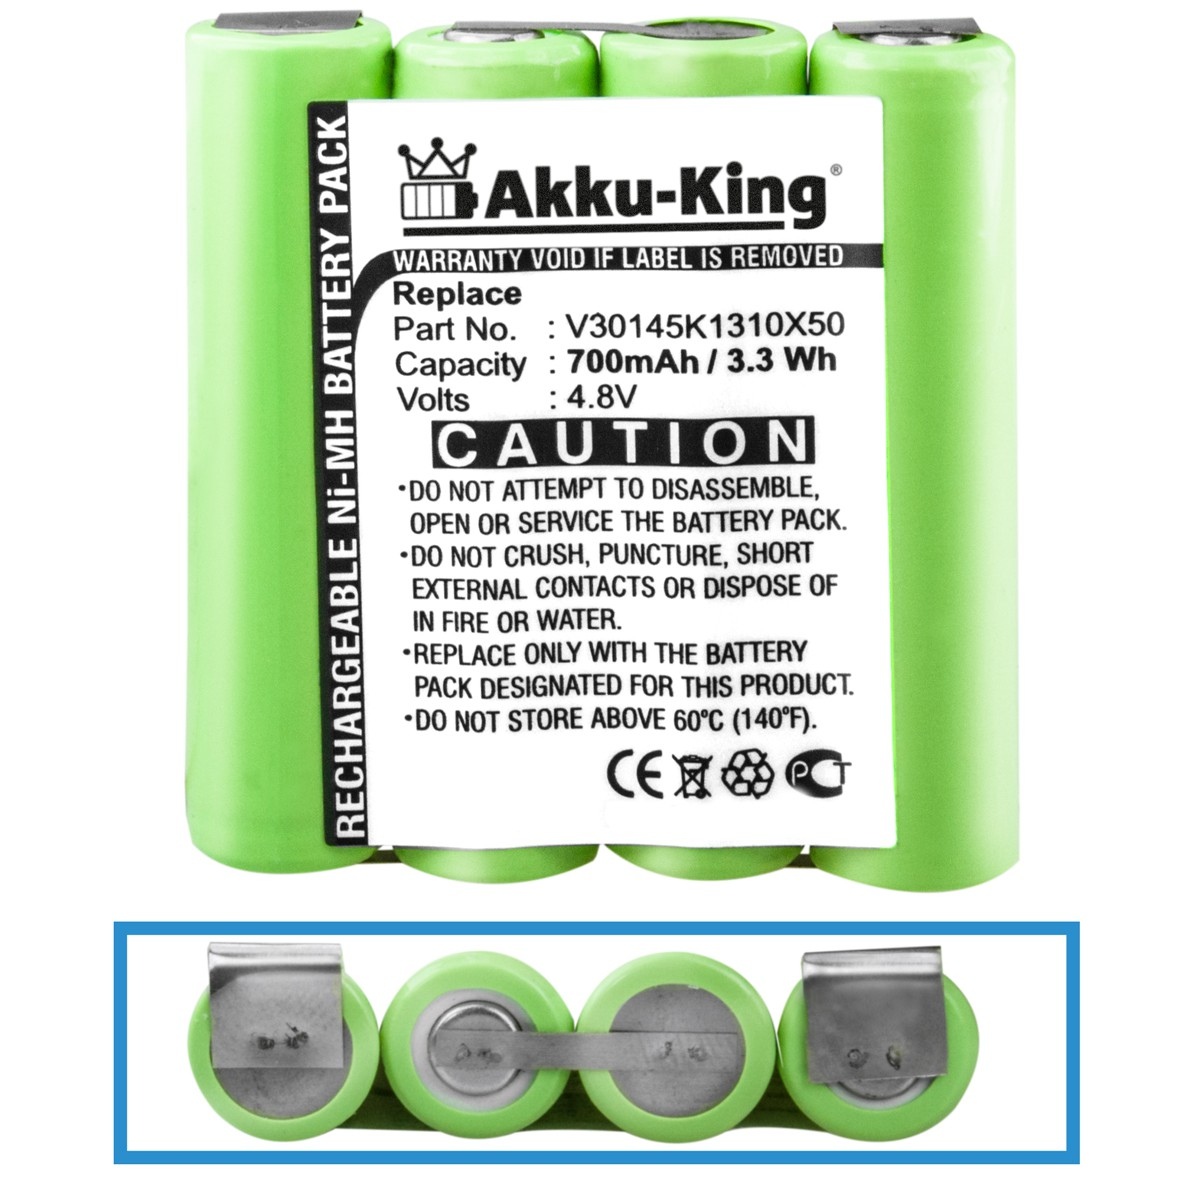 AKKU-KING Akku kompatibel mit Siemens Geräte-Akku, Ni-MH 700mAh 4.8 Volt, V30145K1310X50